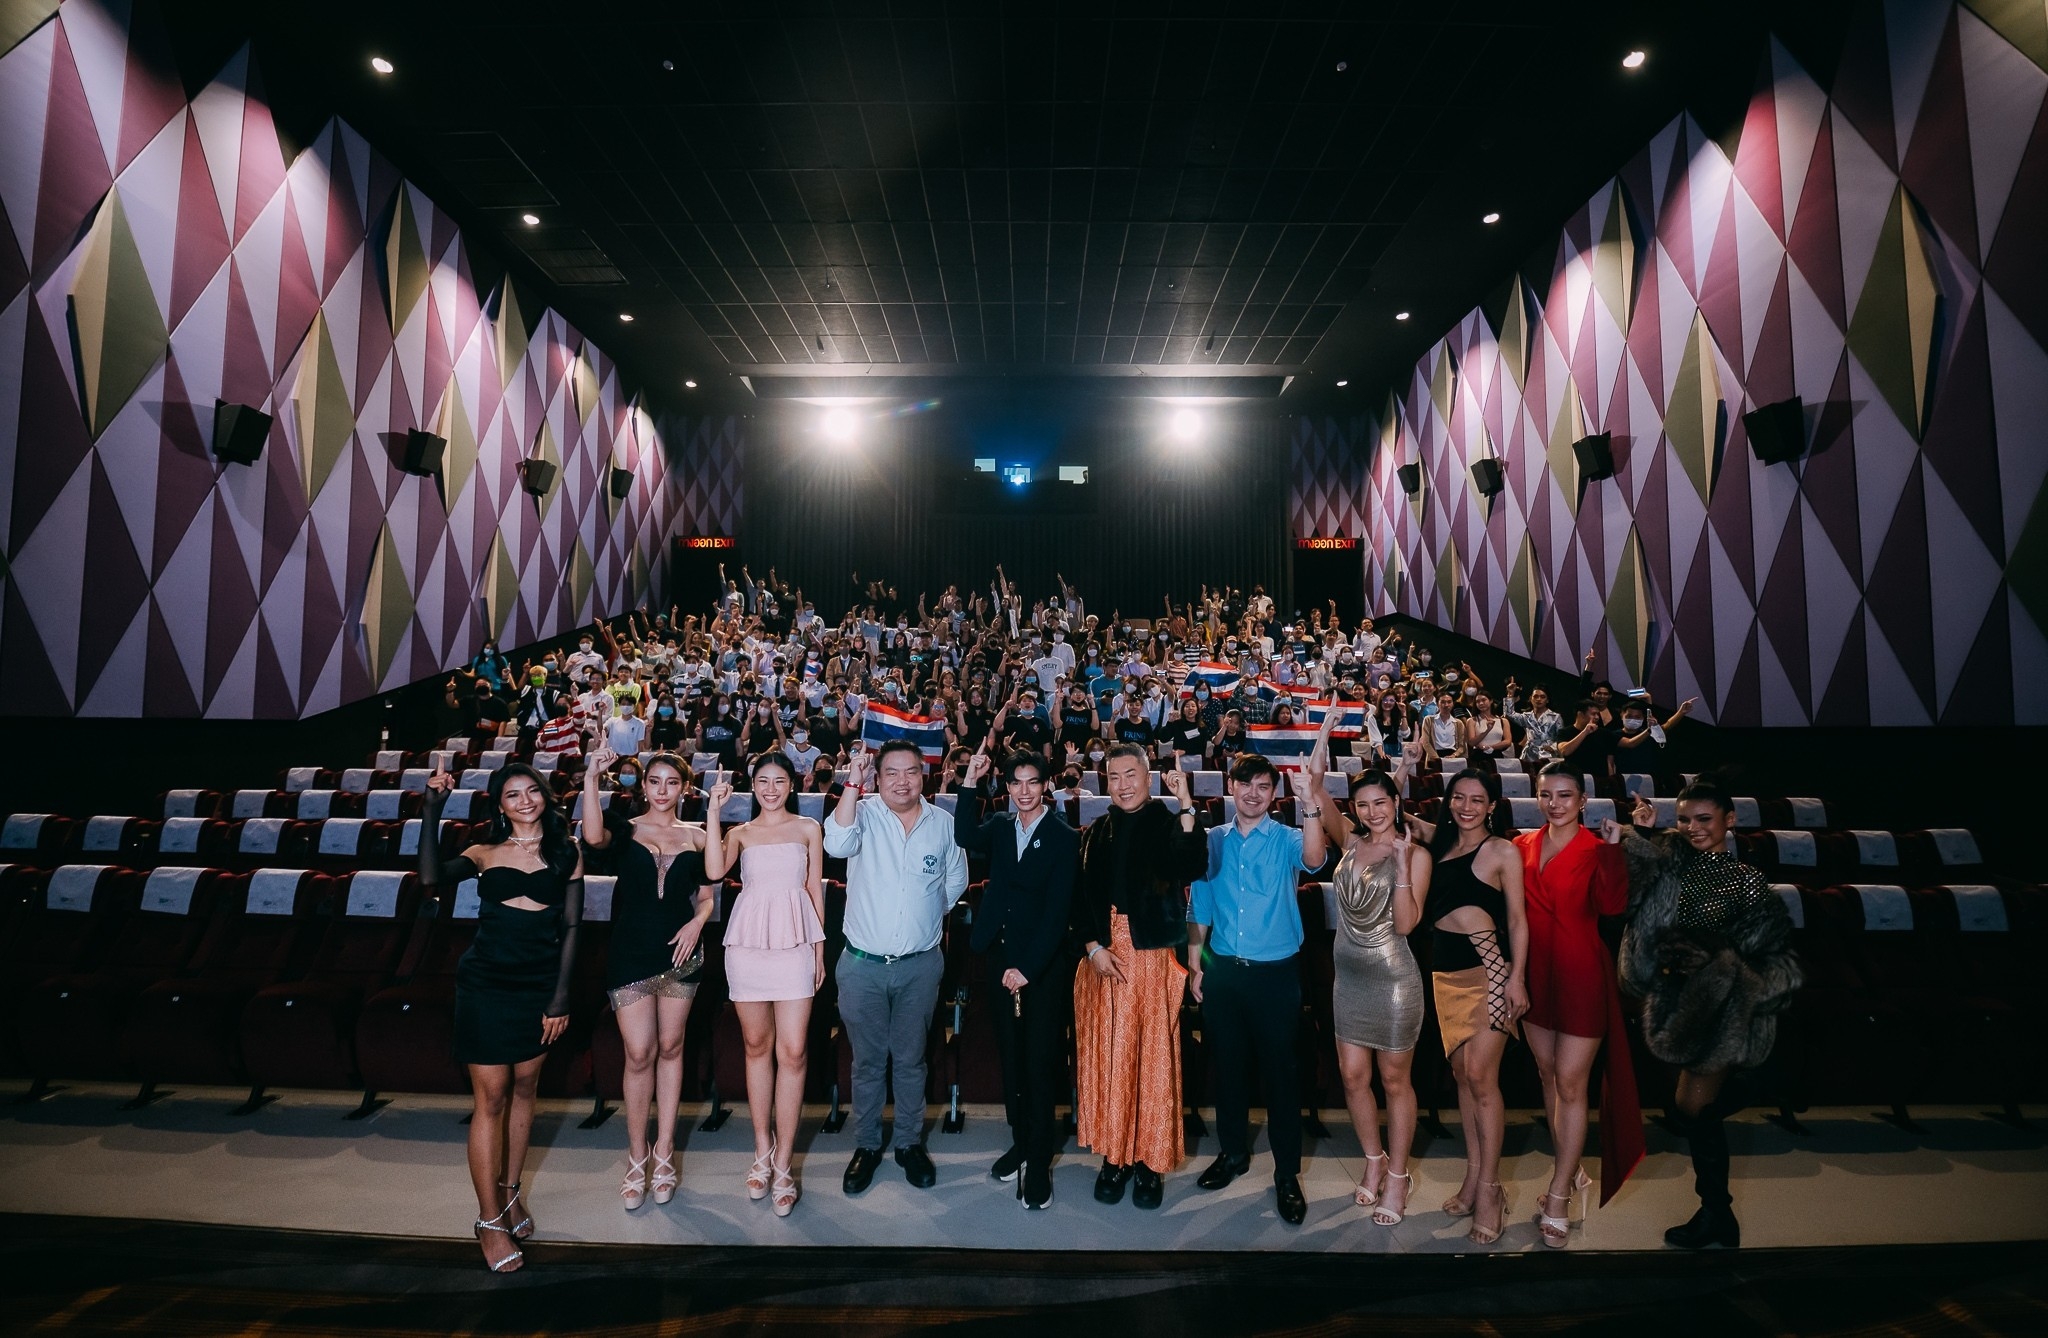 เชียงใหม่ - รอบประวัติศาสตร์เชียร์อิงฟ้าคว้ามงทอง SFX Cinema, Maya ChiangMai บิ๊กจ๊อด สุดทุ่ม ประกาศพาTOP10 บินลัดฟ้ามาเชียงใหม่